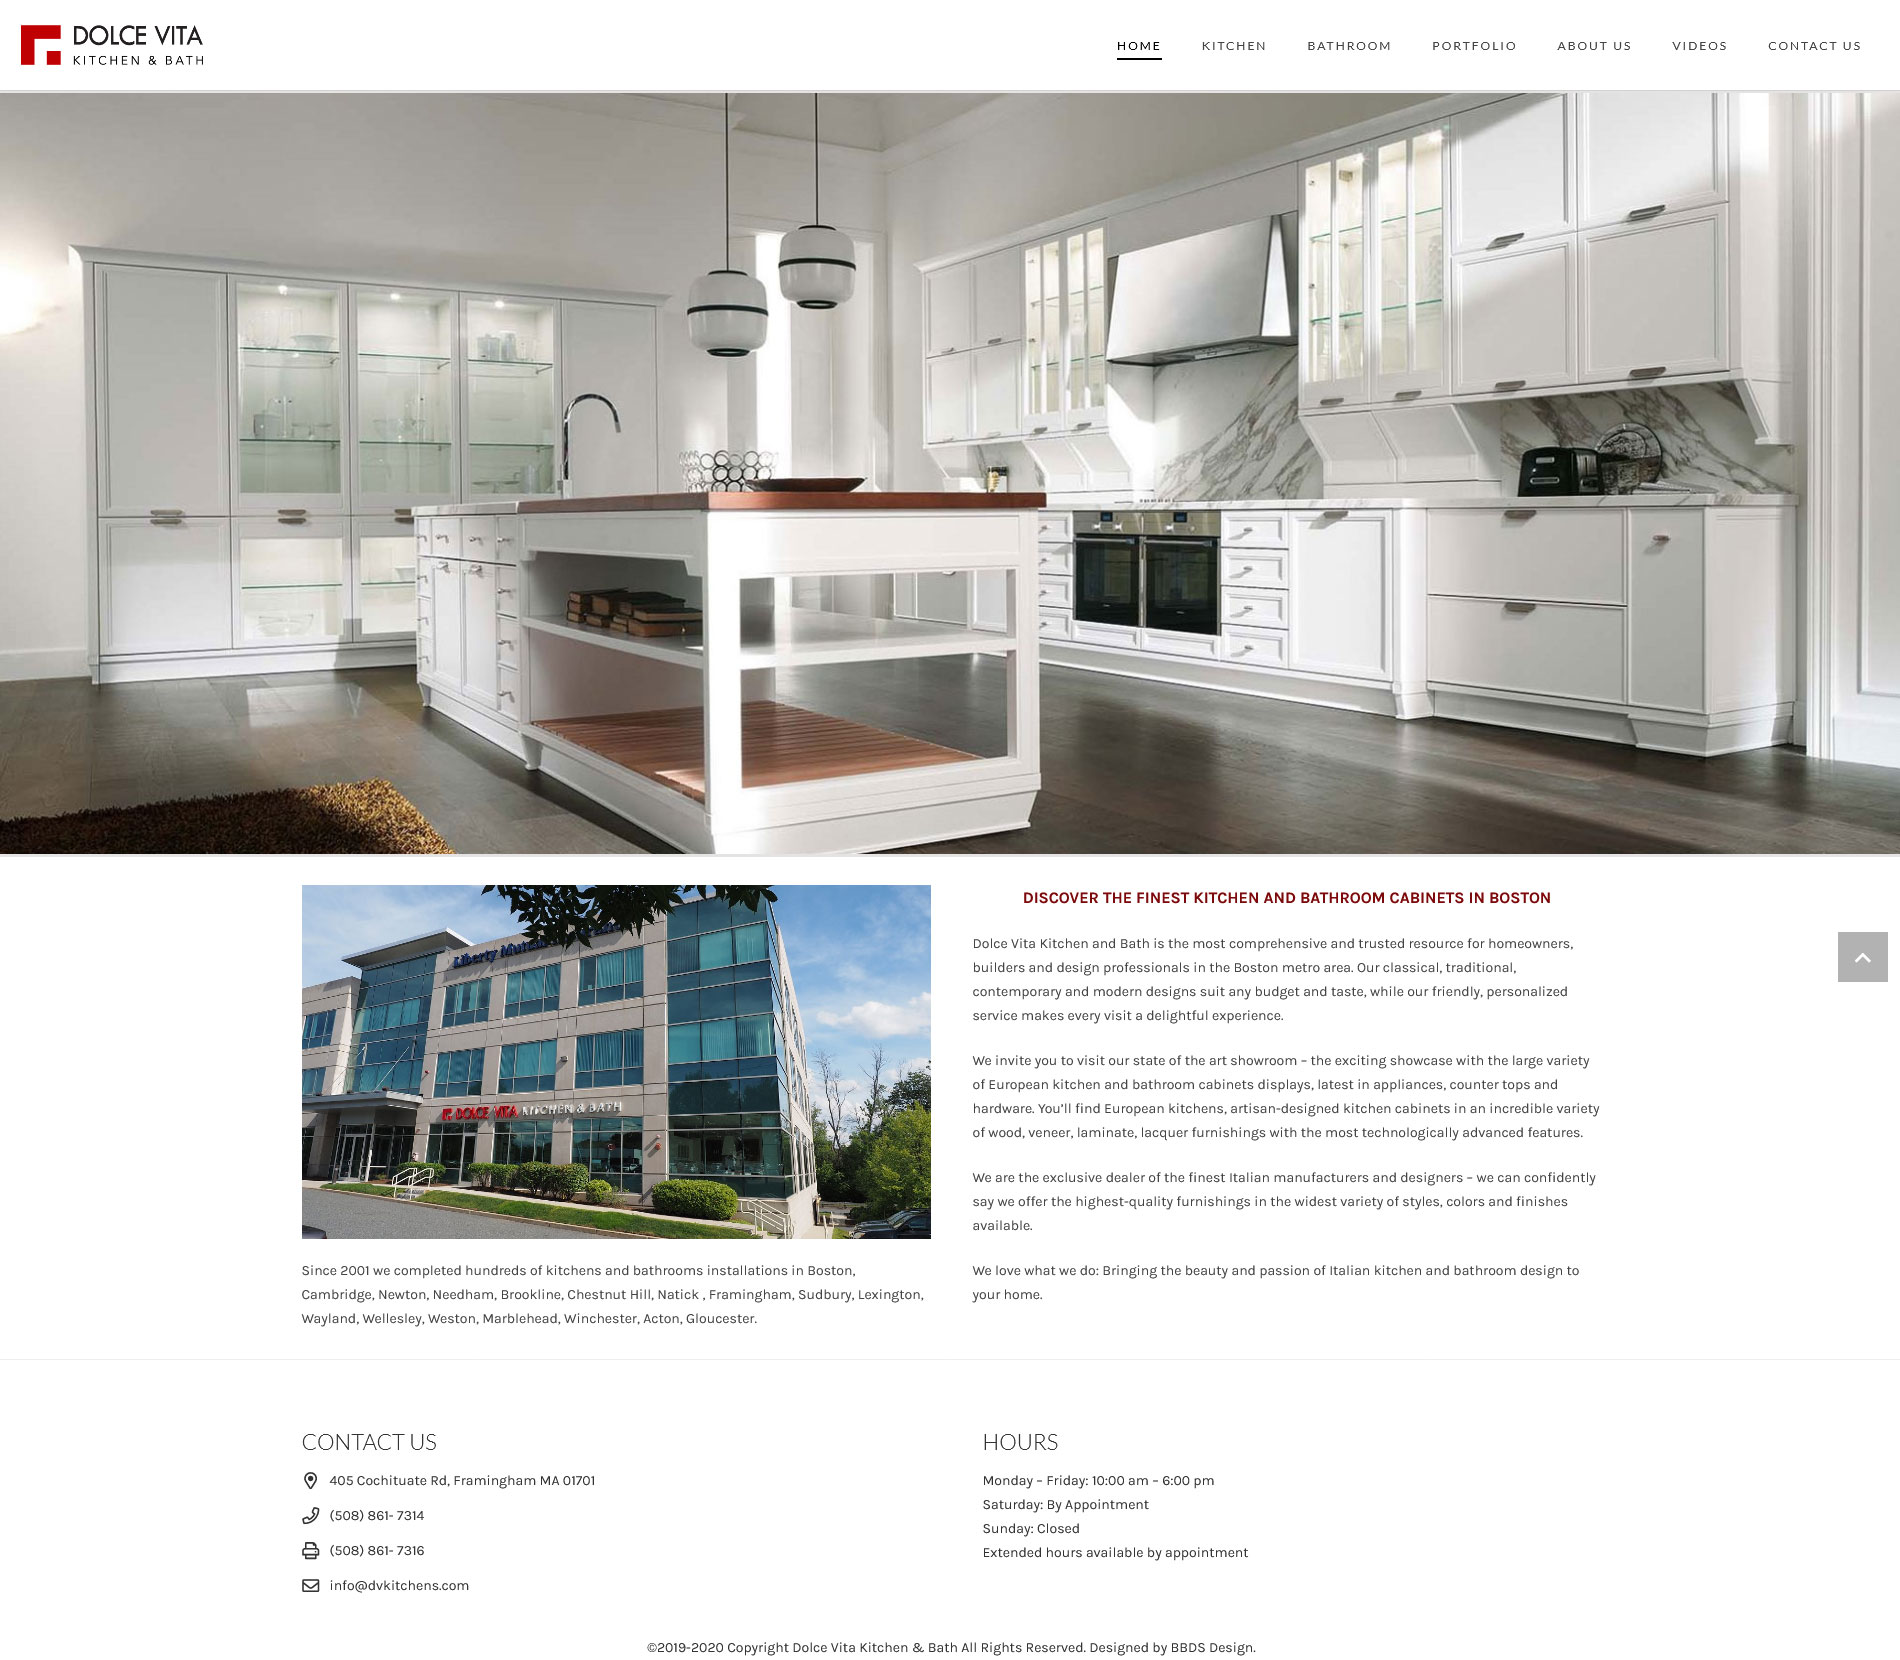  Dolce Vita Kitchen & Bath - Interior Decorating Business Website